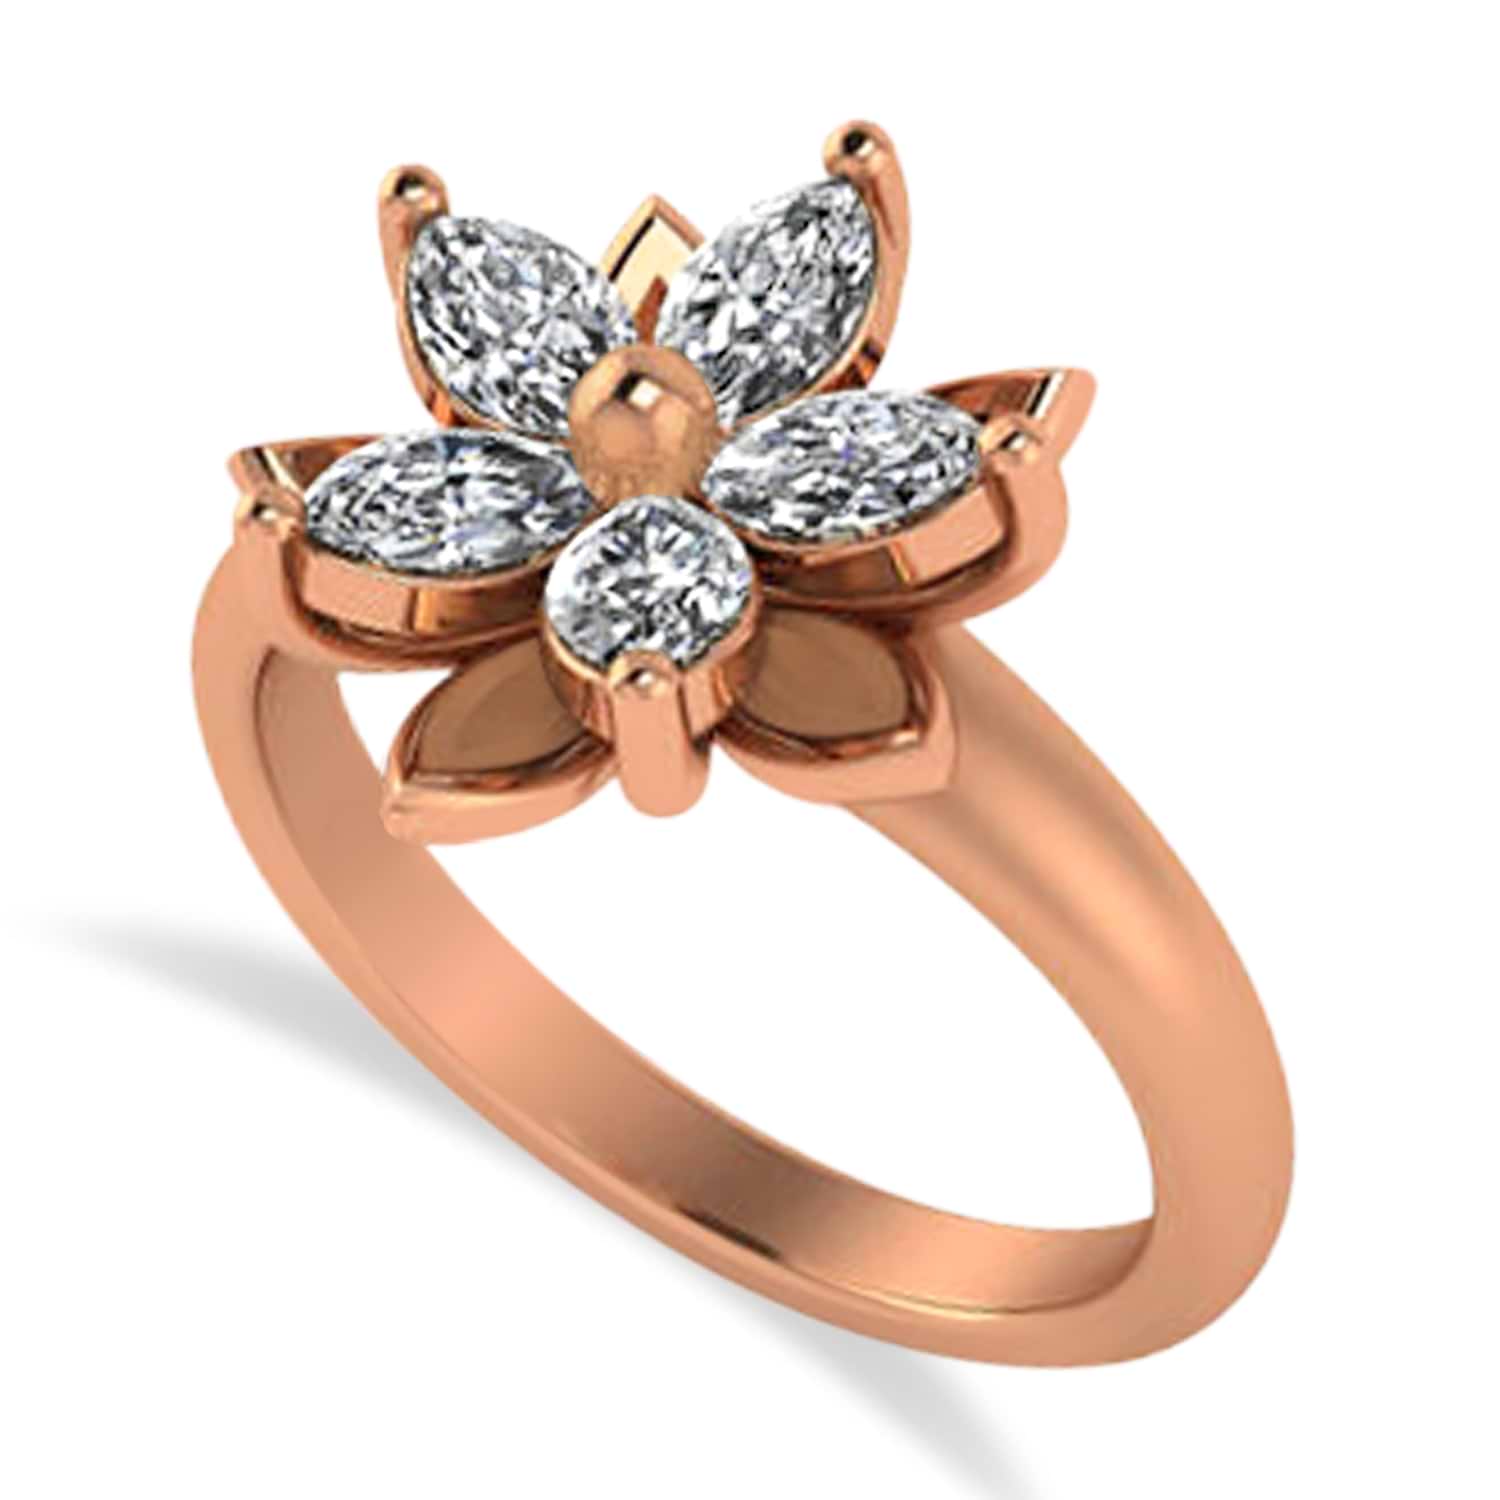 Diamond 5-Petal Flower Fashion Ring 14k Rose Gold (1.00ct)